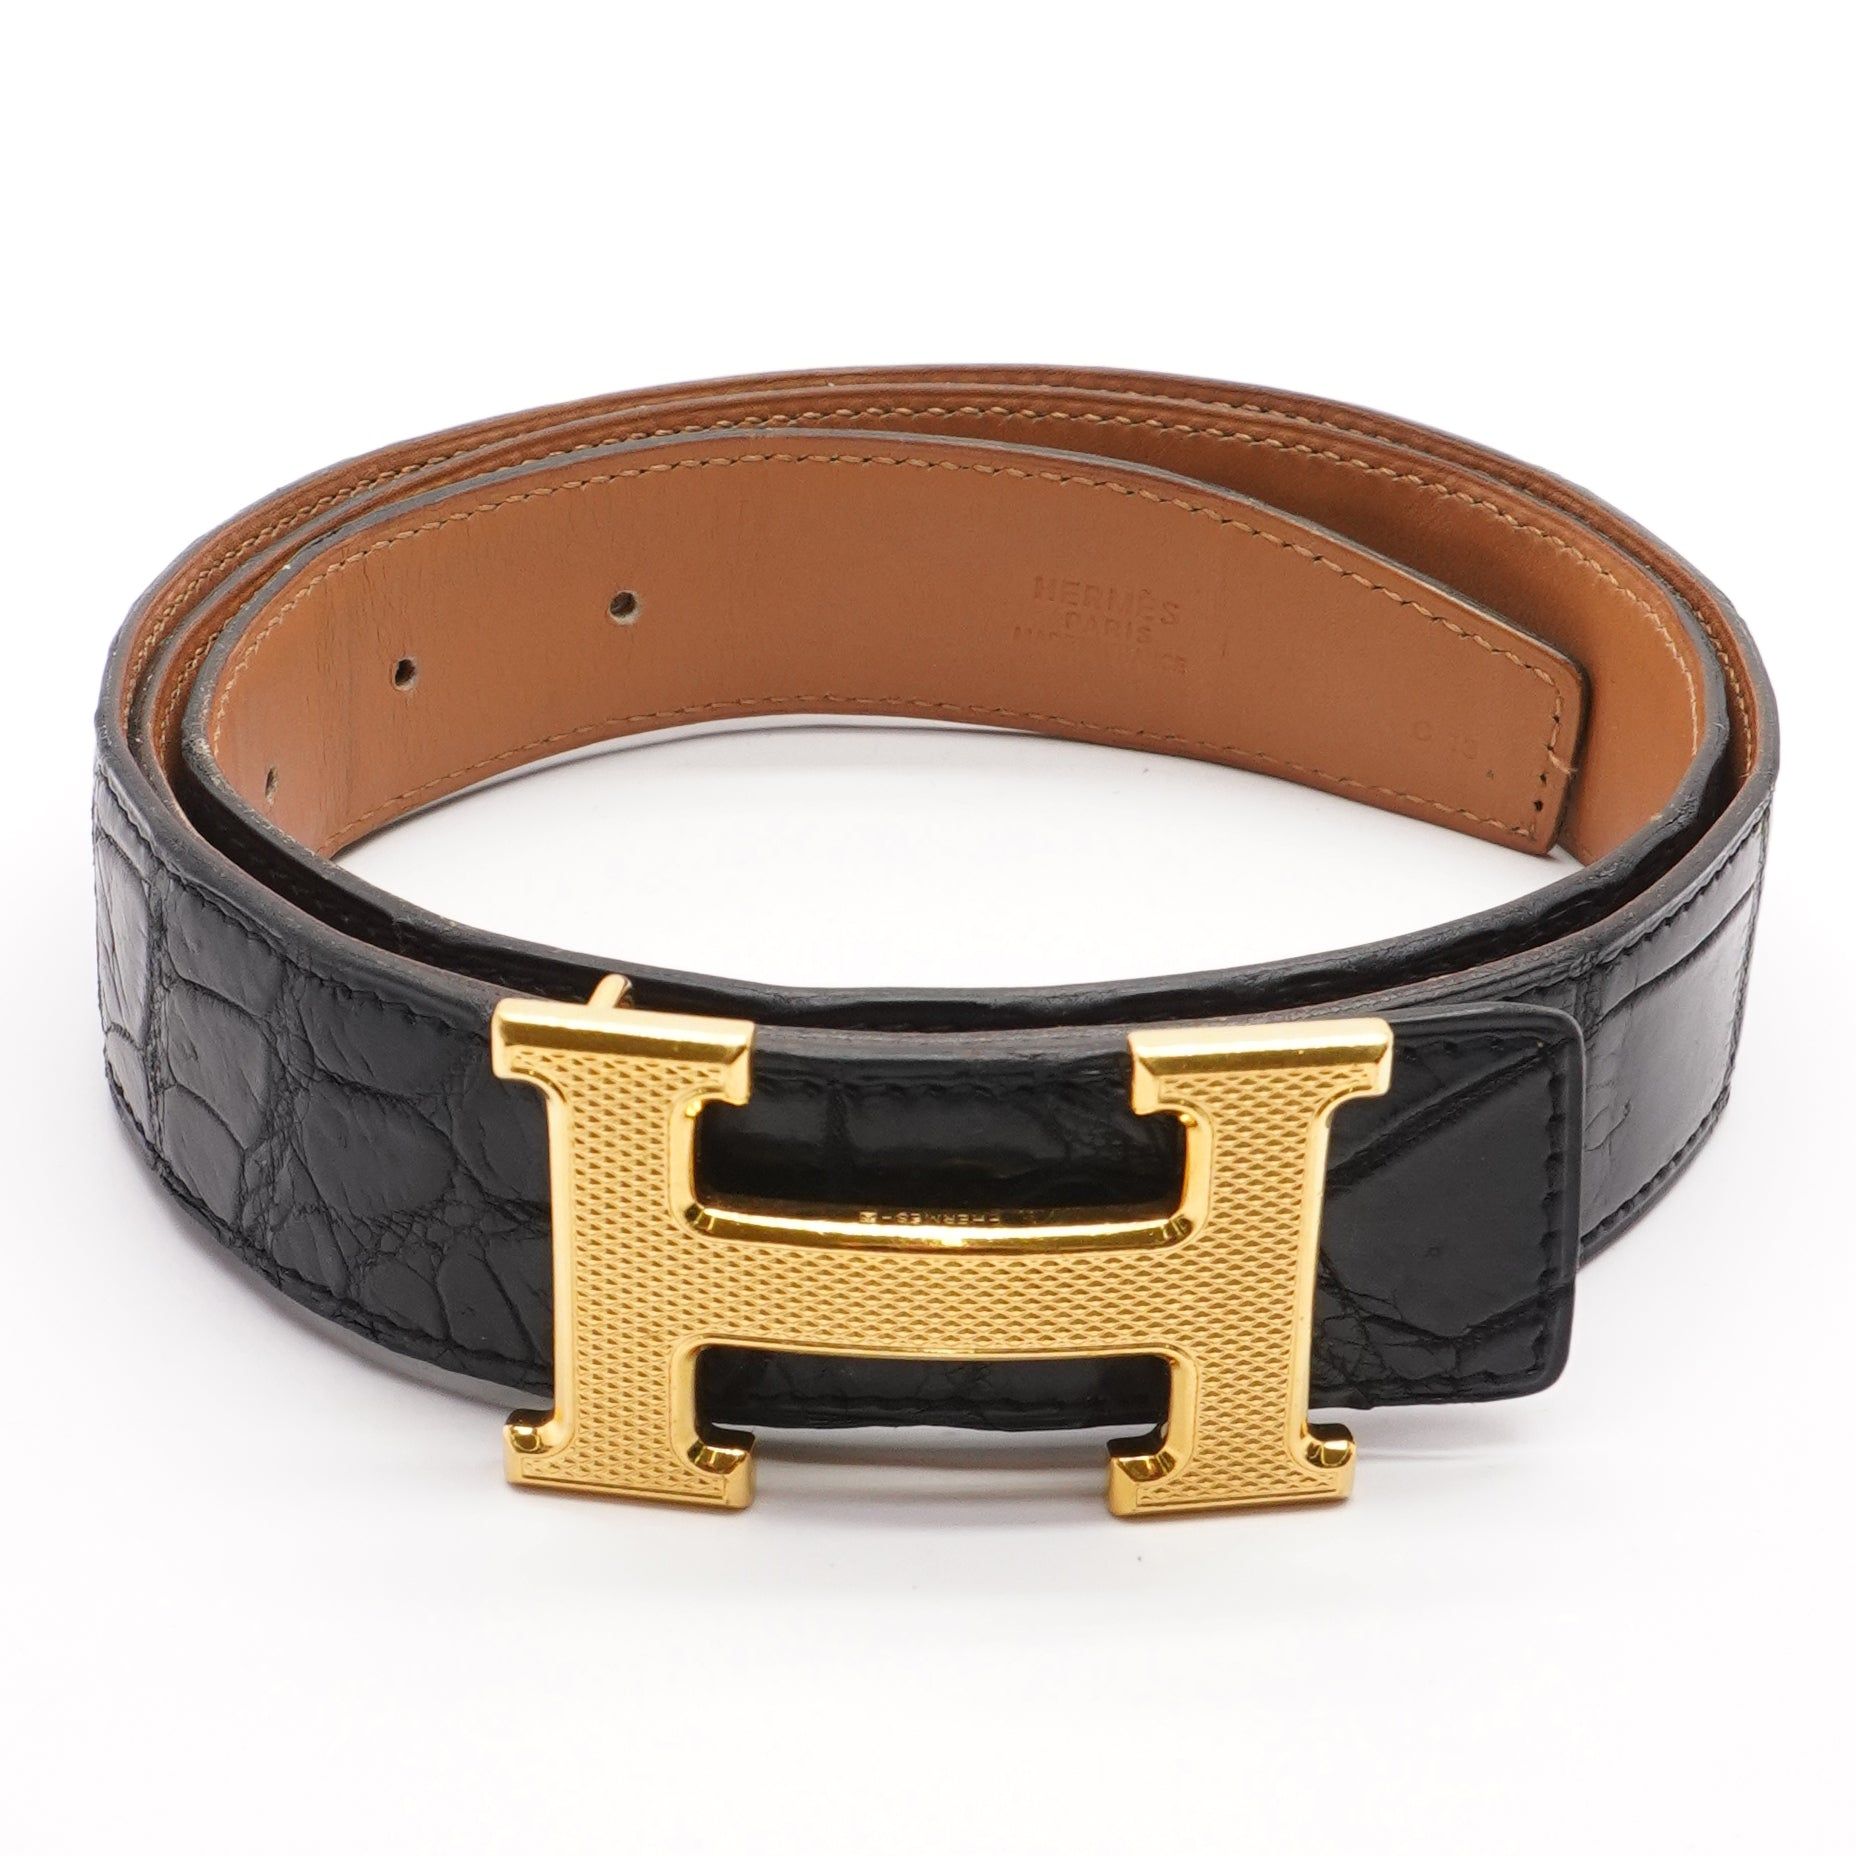 Siza Fashion lv louis brown check belt party wear fashion belts for men (brown check)